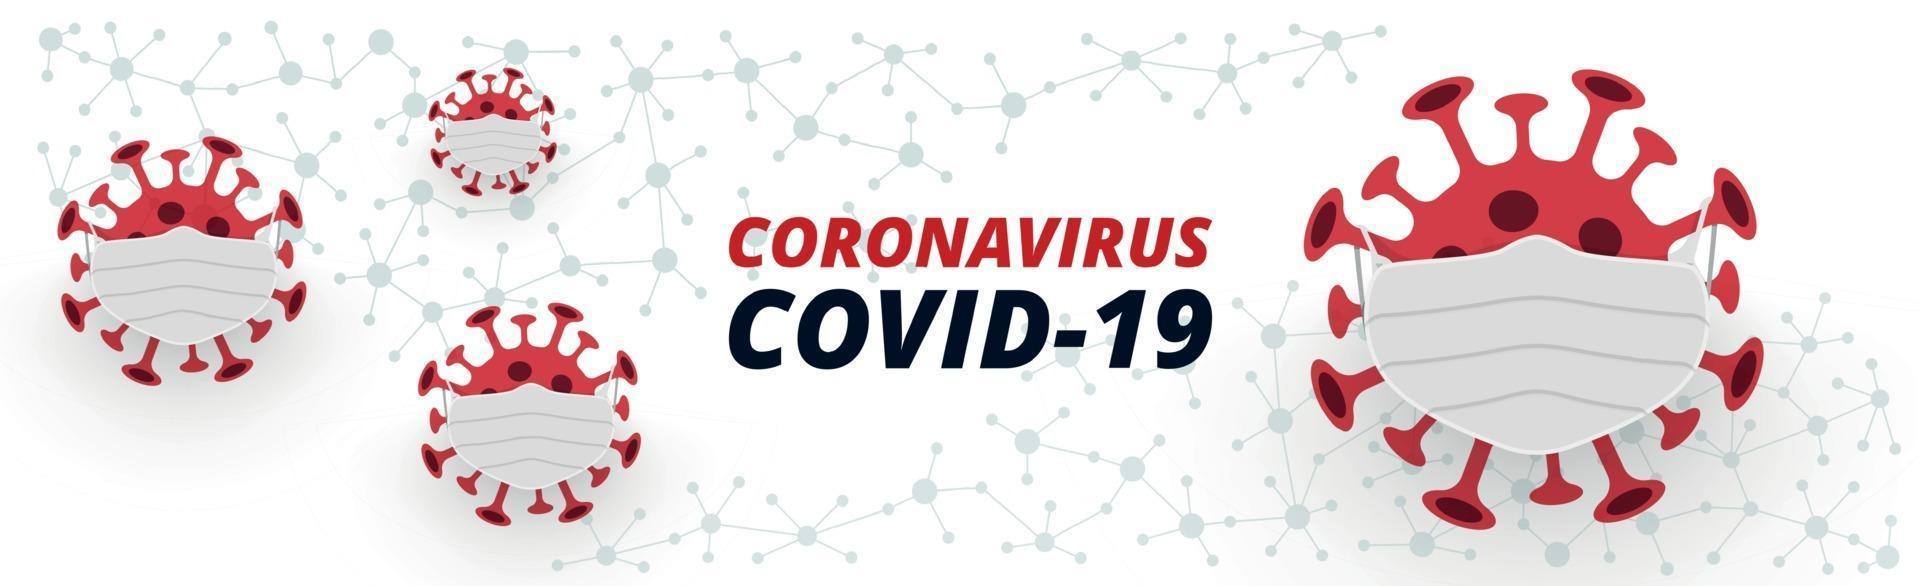 gefährliches neues Virus covid-19, das Bild von Bakterien - Vektor